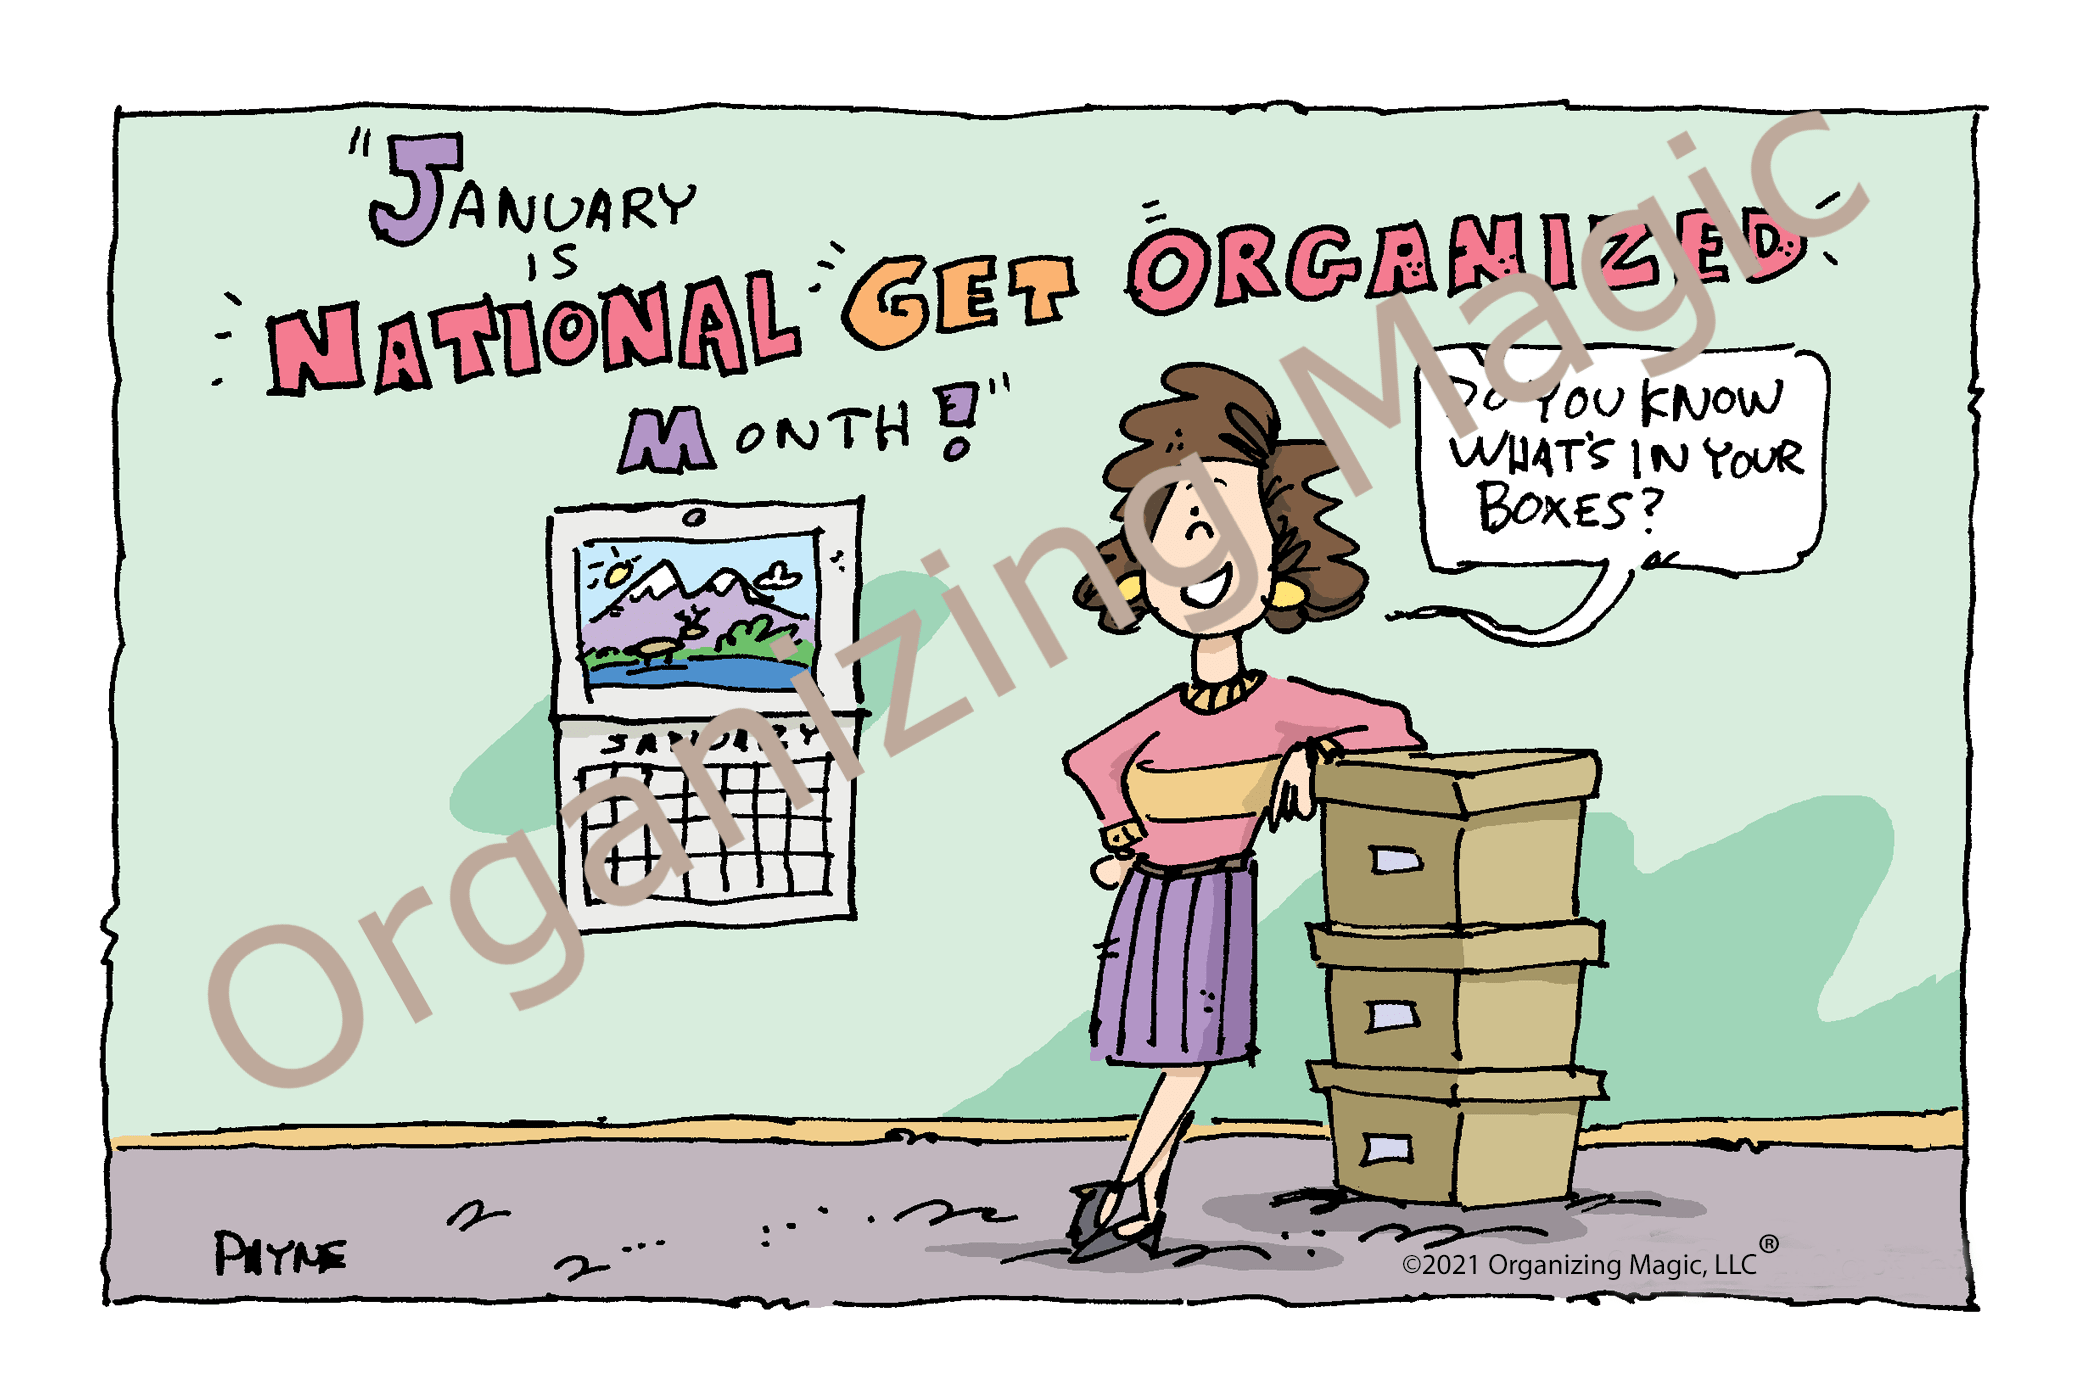 Get Organized Month